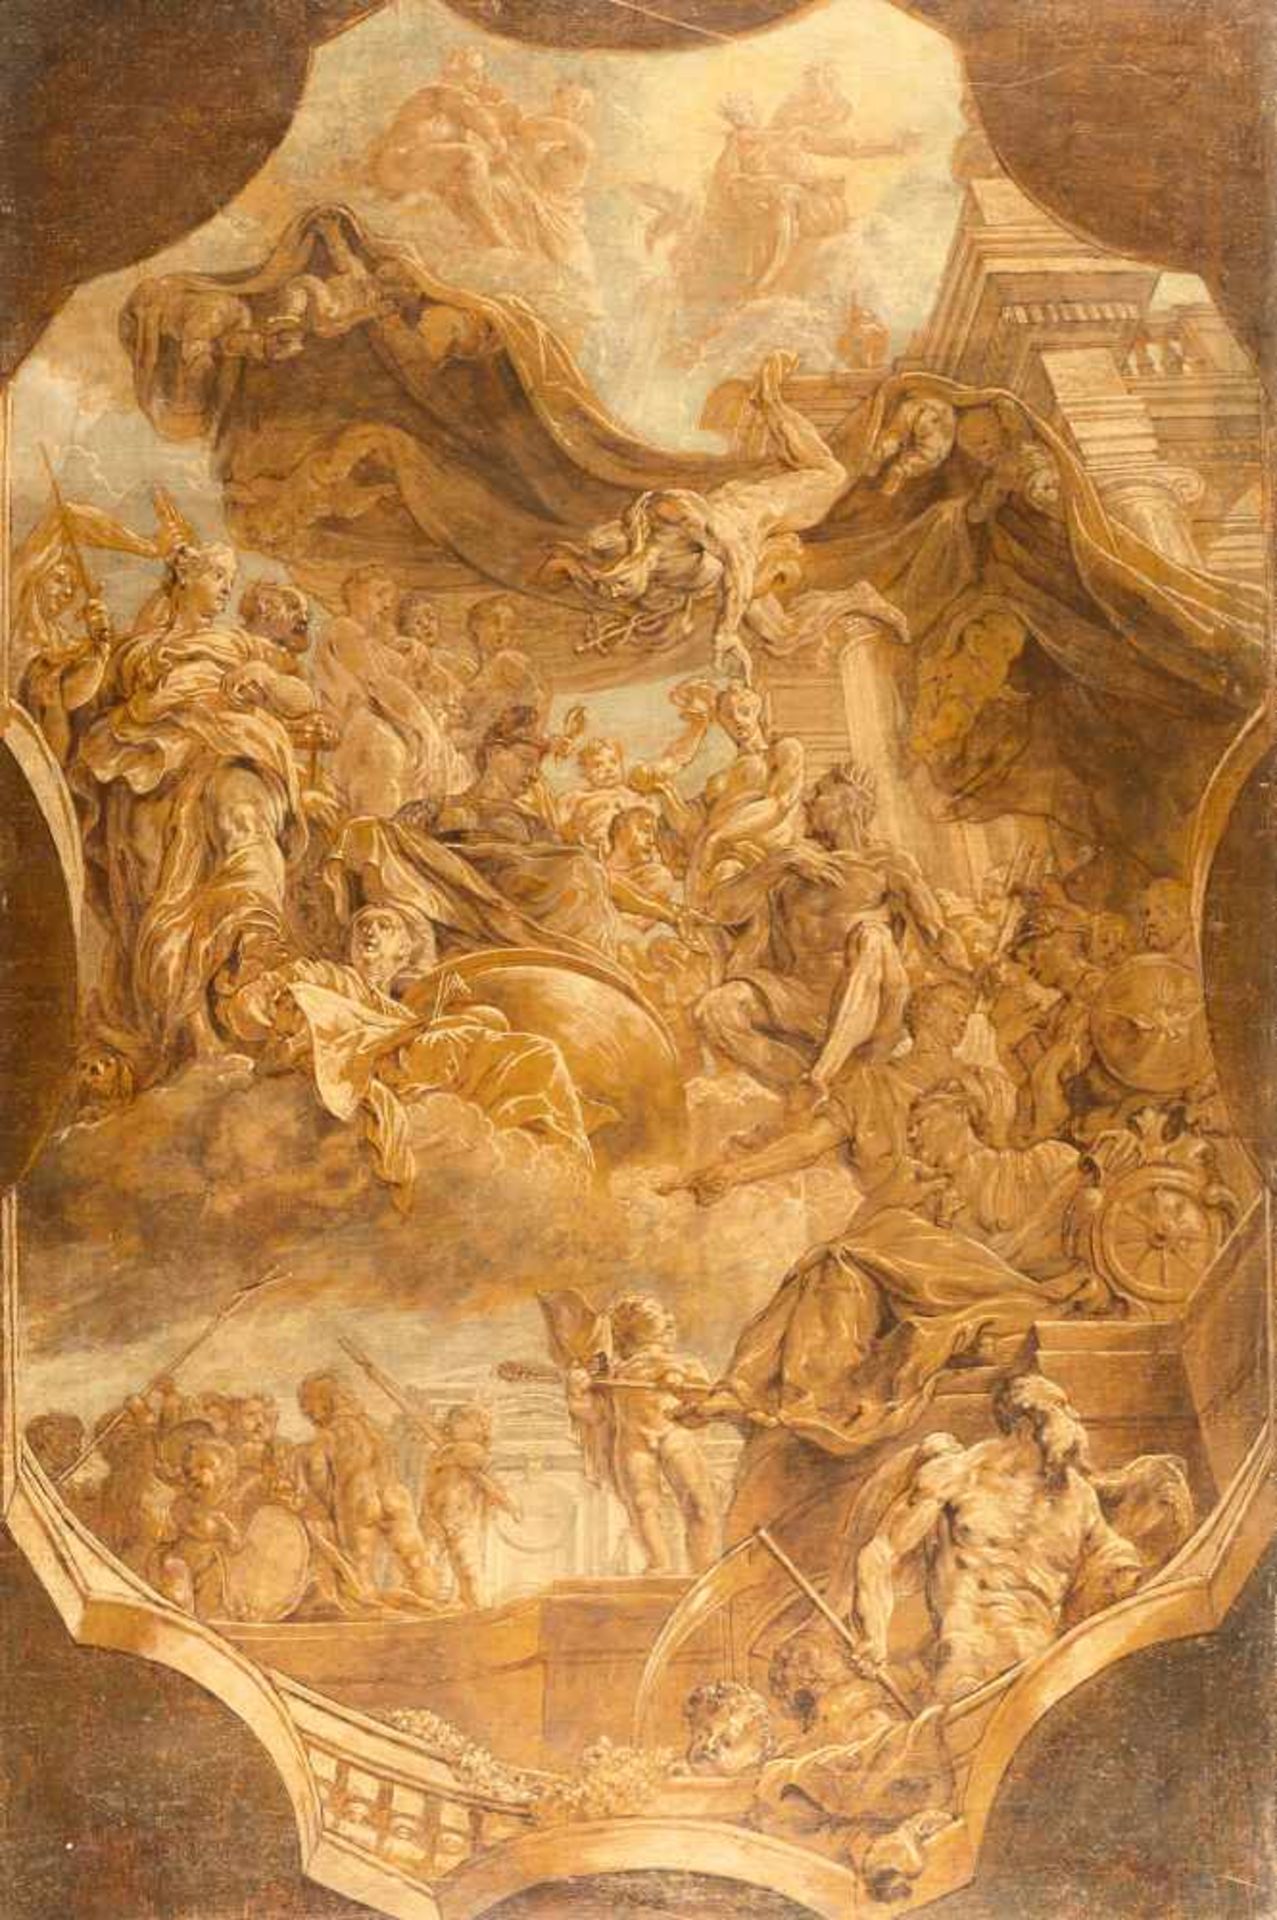 FlemishDie Götter im OlympÖl (in Grisaille) auf Leinwand, doubliert. (Um 1700). 81,5 x 53,5 cm.